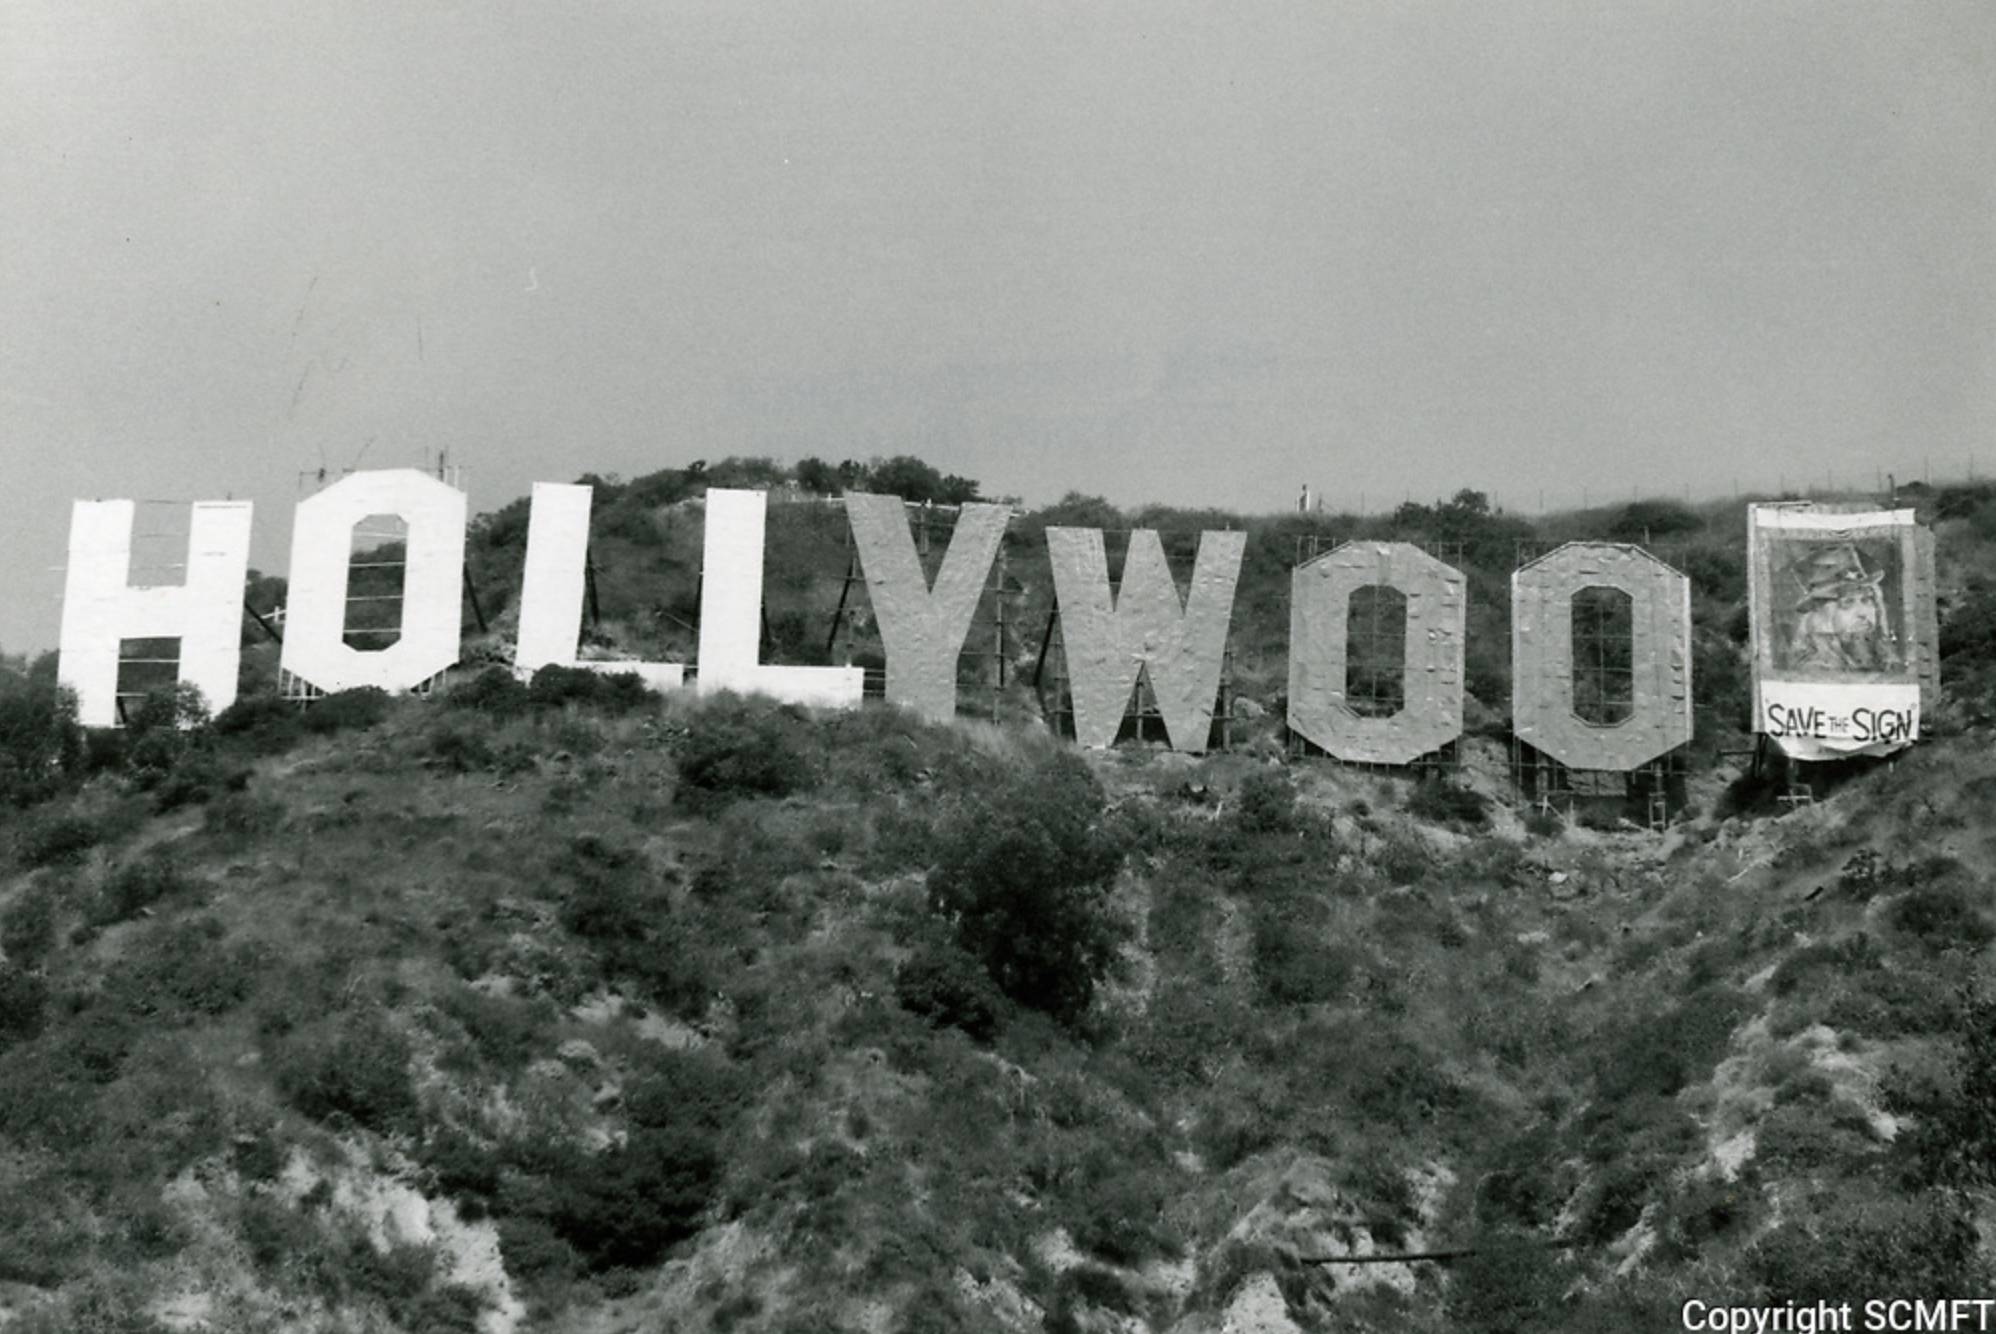 1973. Знак Голливуд в аварийном состоянии. Баннер «сохрани знак» закрывает букву D.